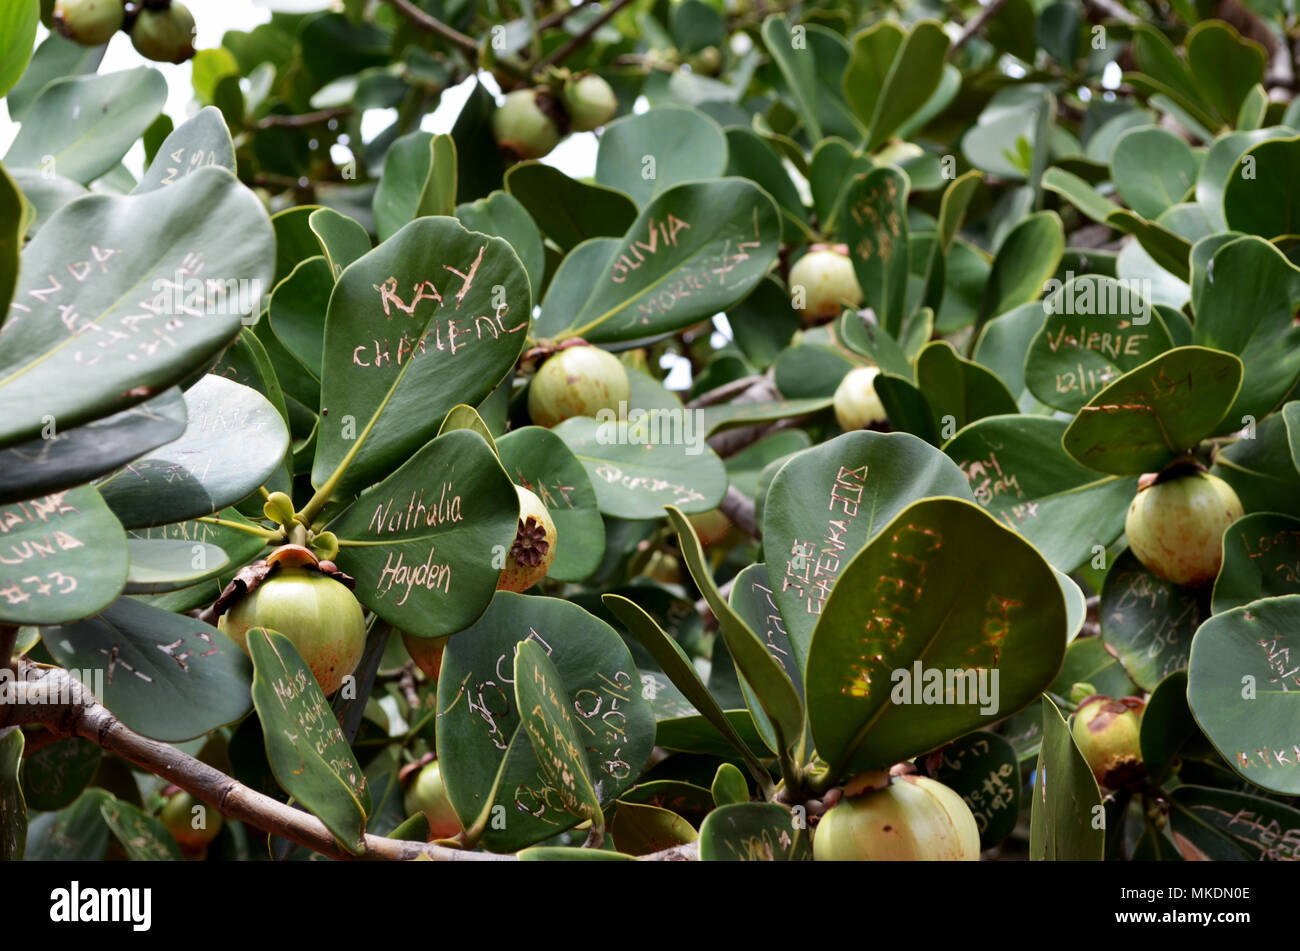 Die Namen Auf Den Blattern Von Obst Baum Geschrieben Stockfotografie Alamy